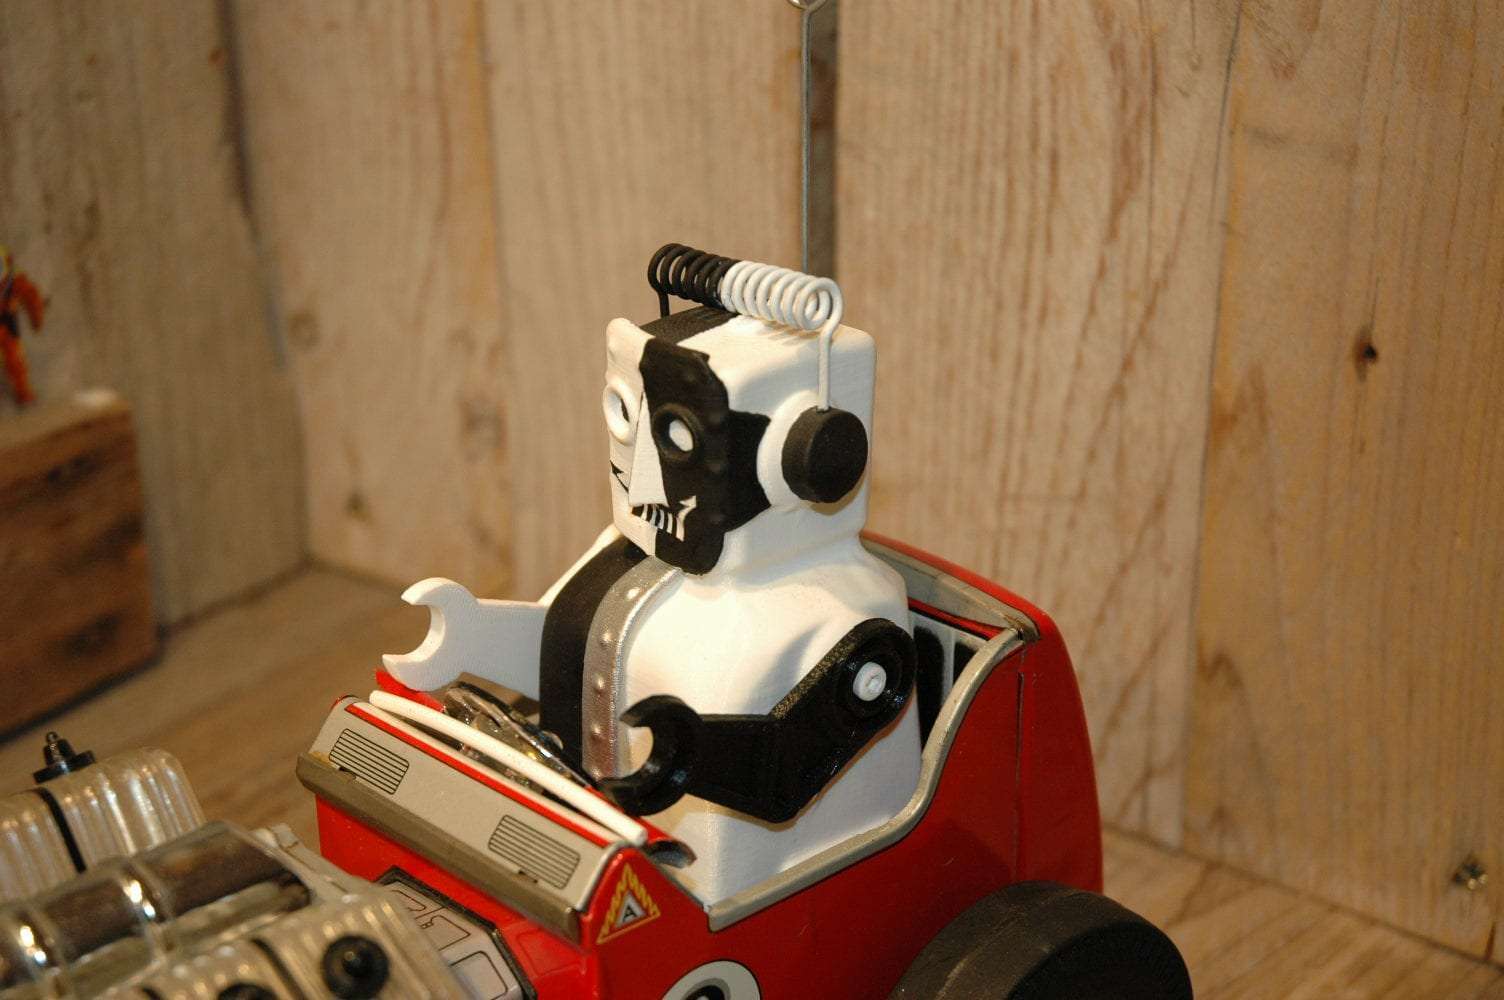 Daiya / Vst - Gosstavo Robot Roadster 8